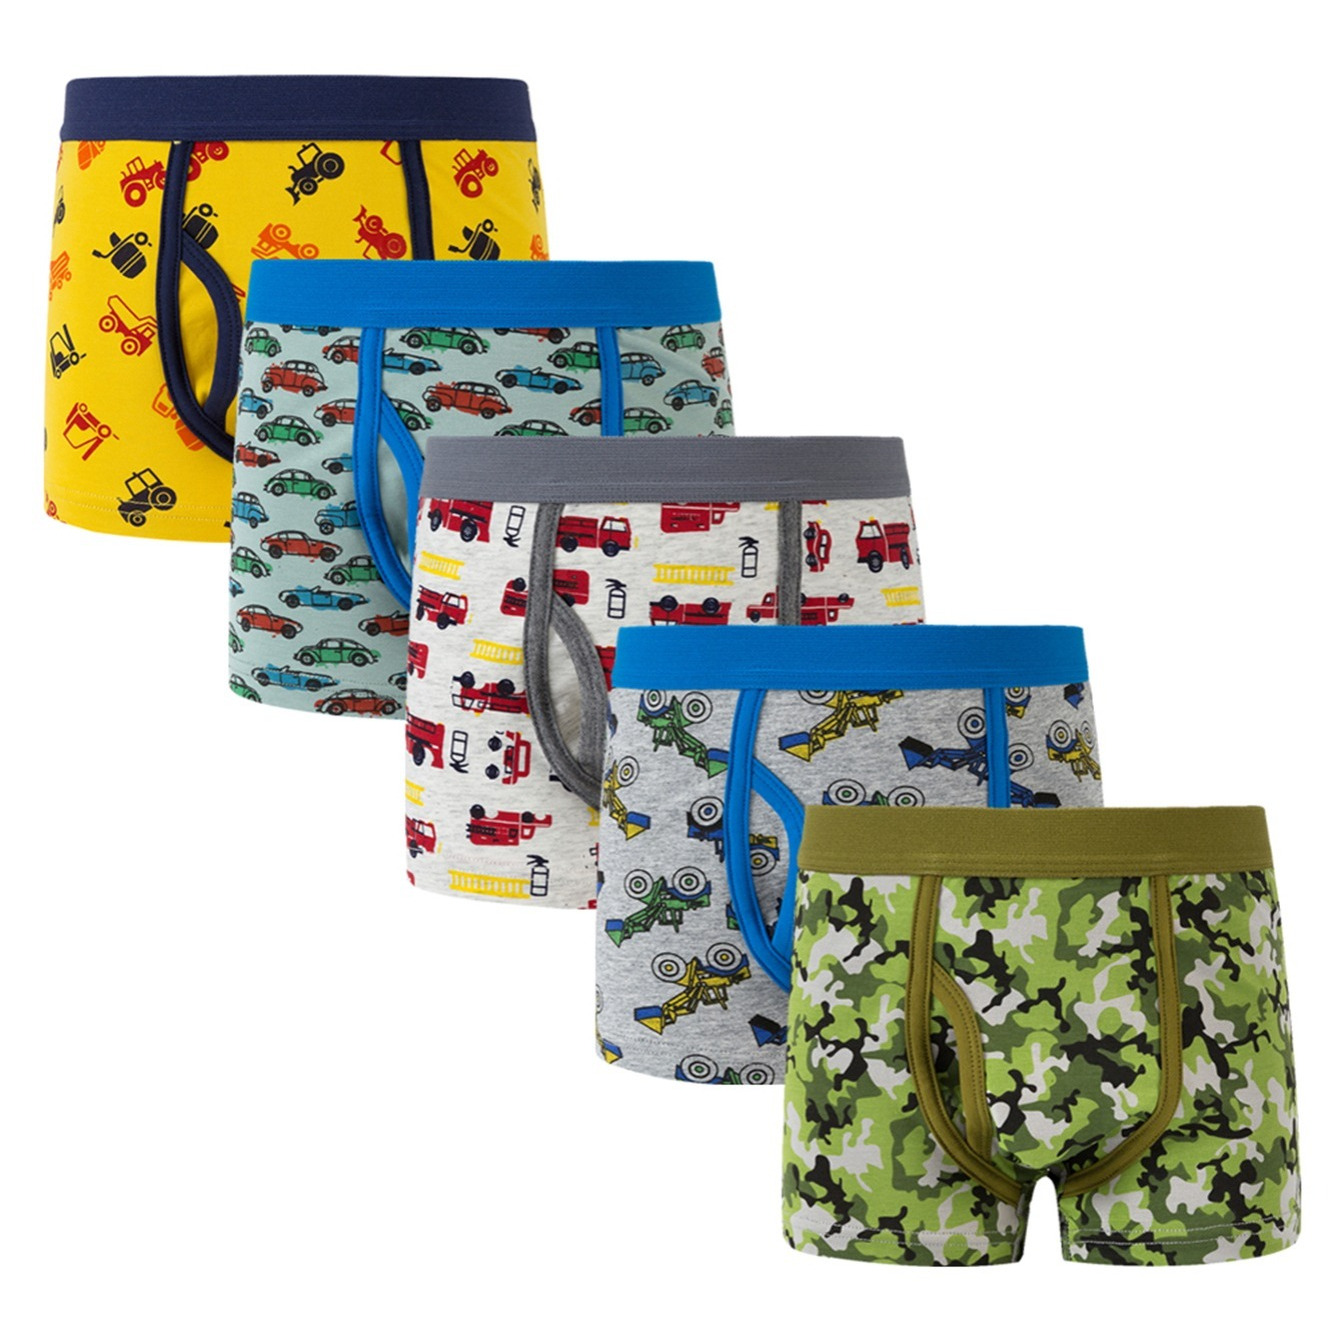 

5pcs/set Boys Cute Dinosaur Series Boxer Briefs Cotton Comfy Underpants